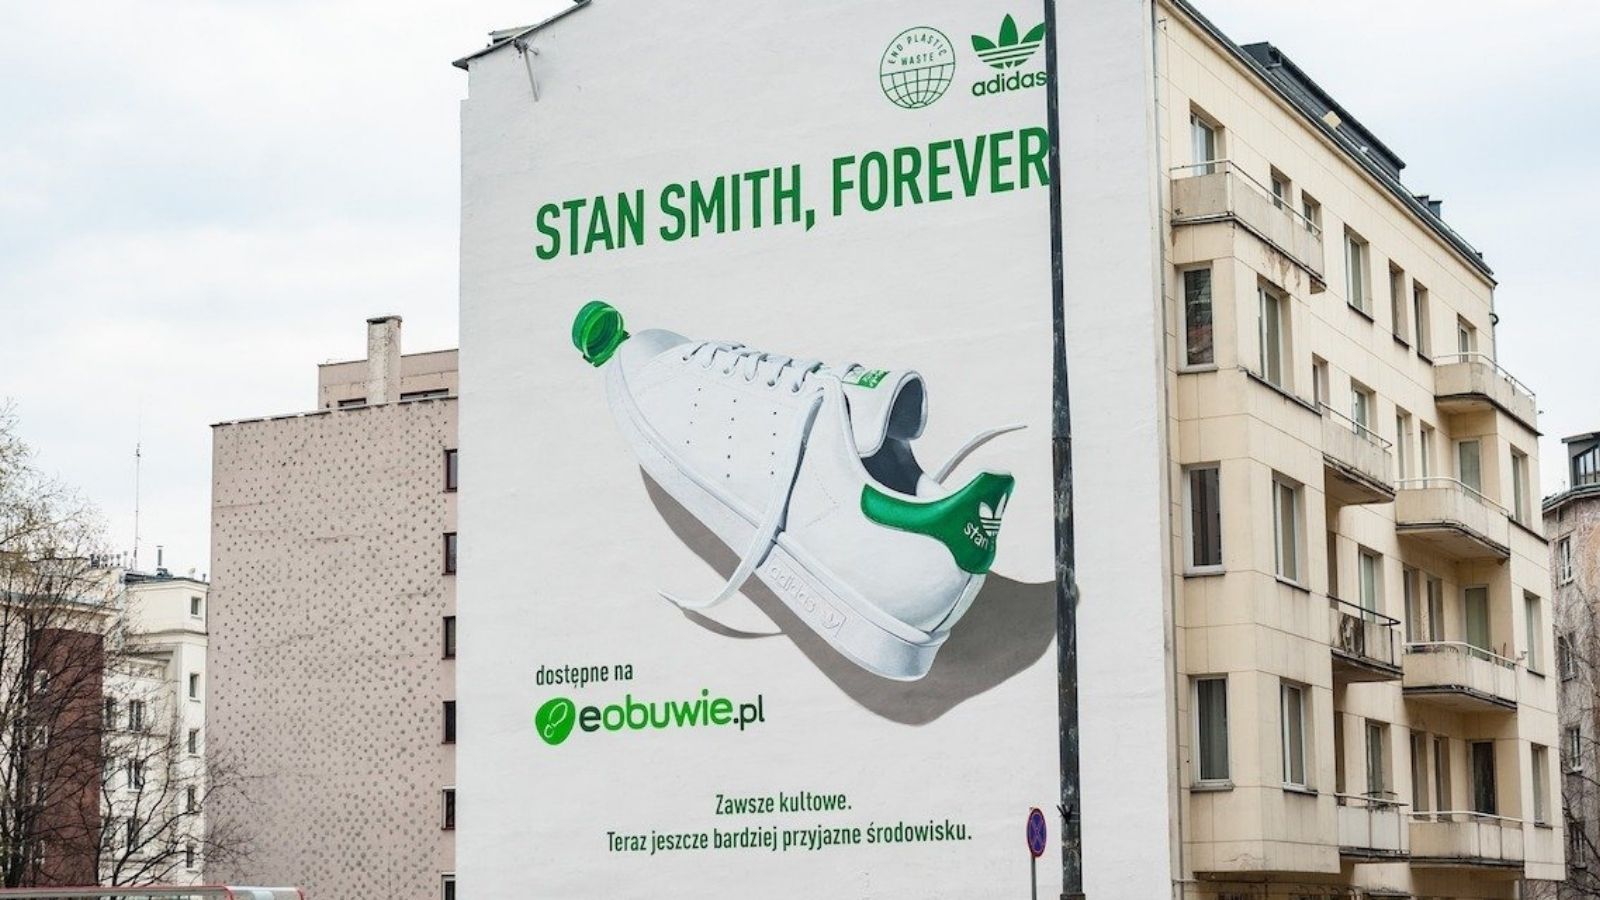 Adidas i eobuwie.pl z muralem oczyszczającym powietrze w centrum stolicy Design mediarun adidas eobuwie